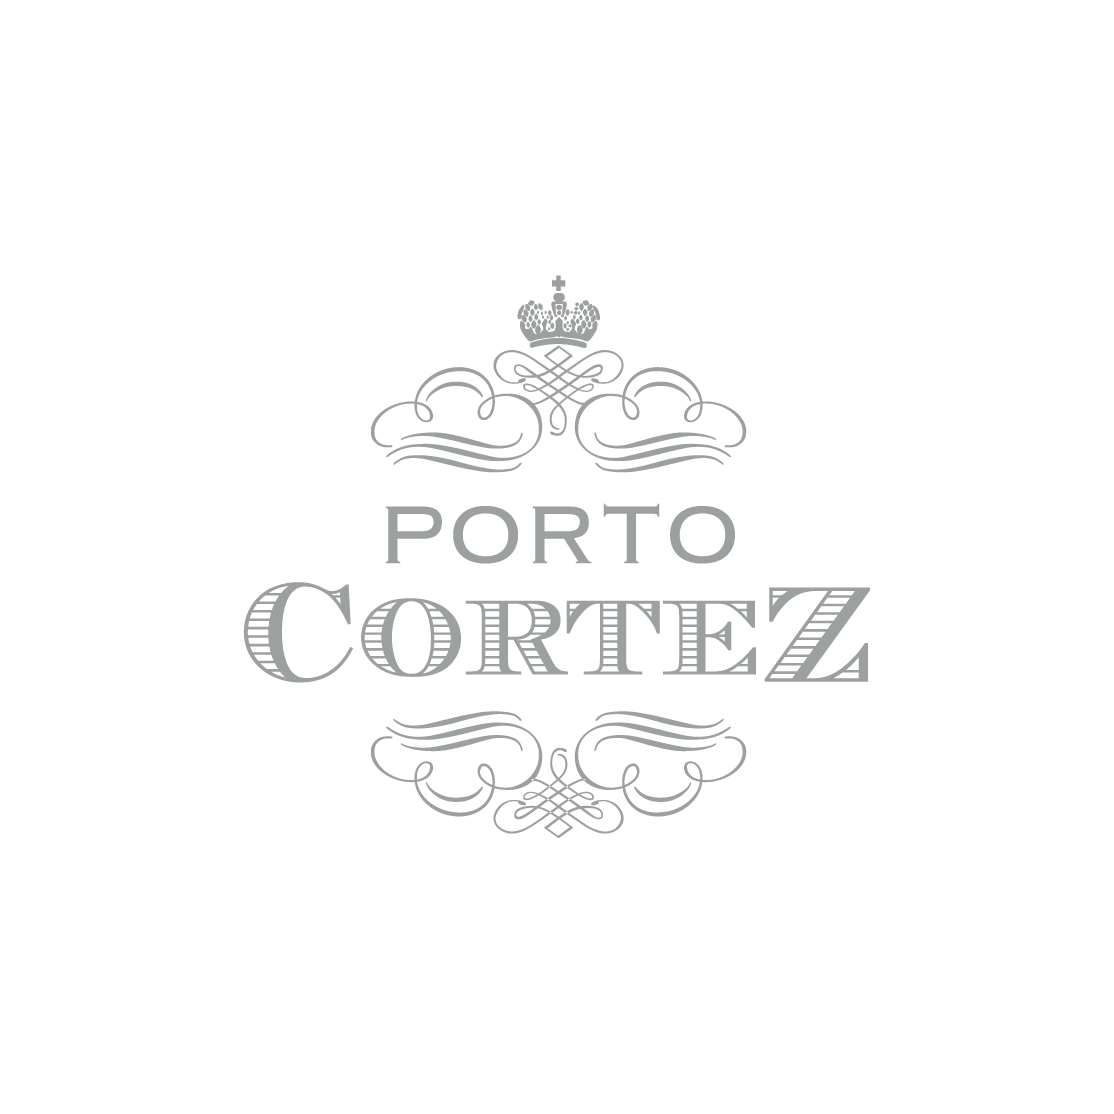 Porto Cortez